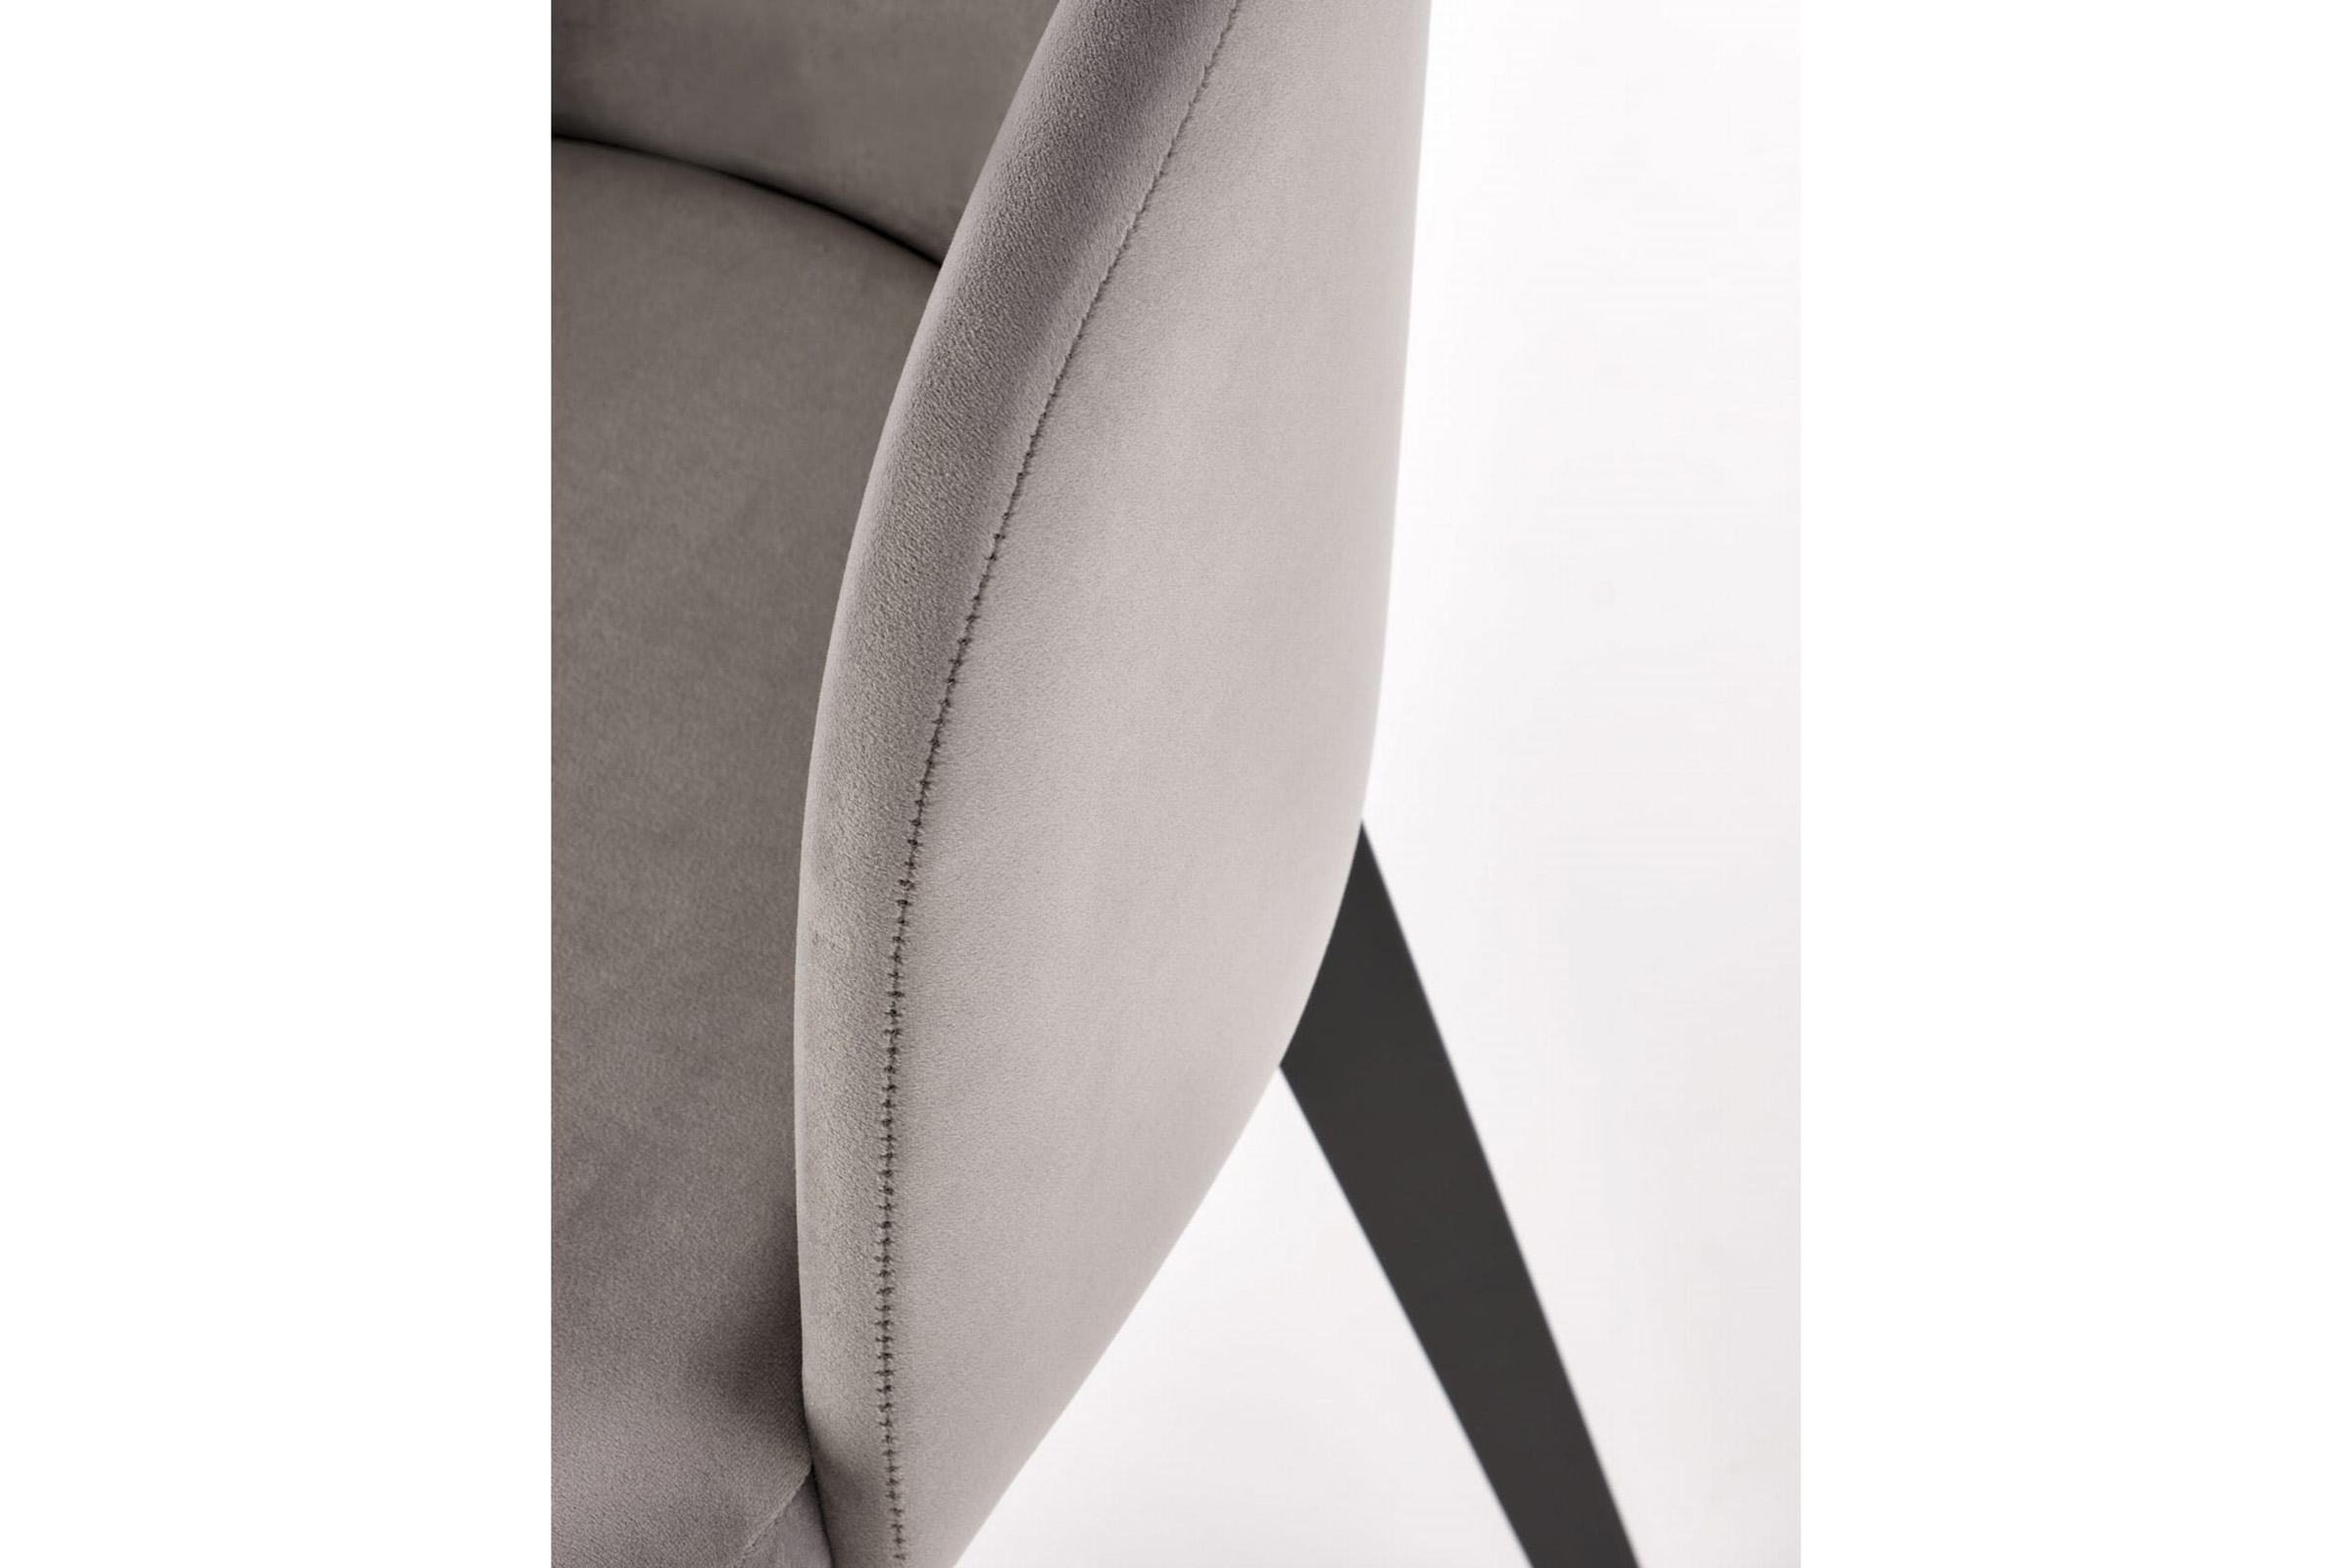 Krzesło tapicerowane Nerevio z drewnianymi nogami - beż / czarne nogi Krzesło tapicerowane Nerevio z drewnianymi nogami - beż / czarne nogi